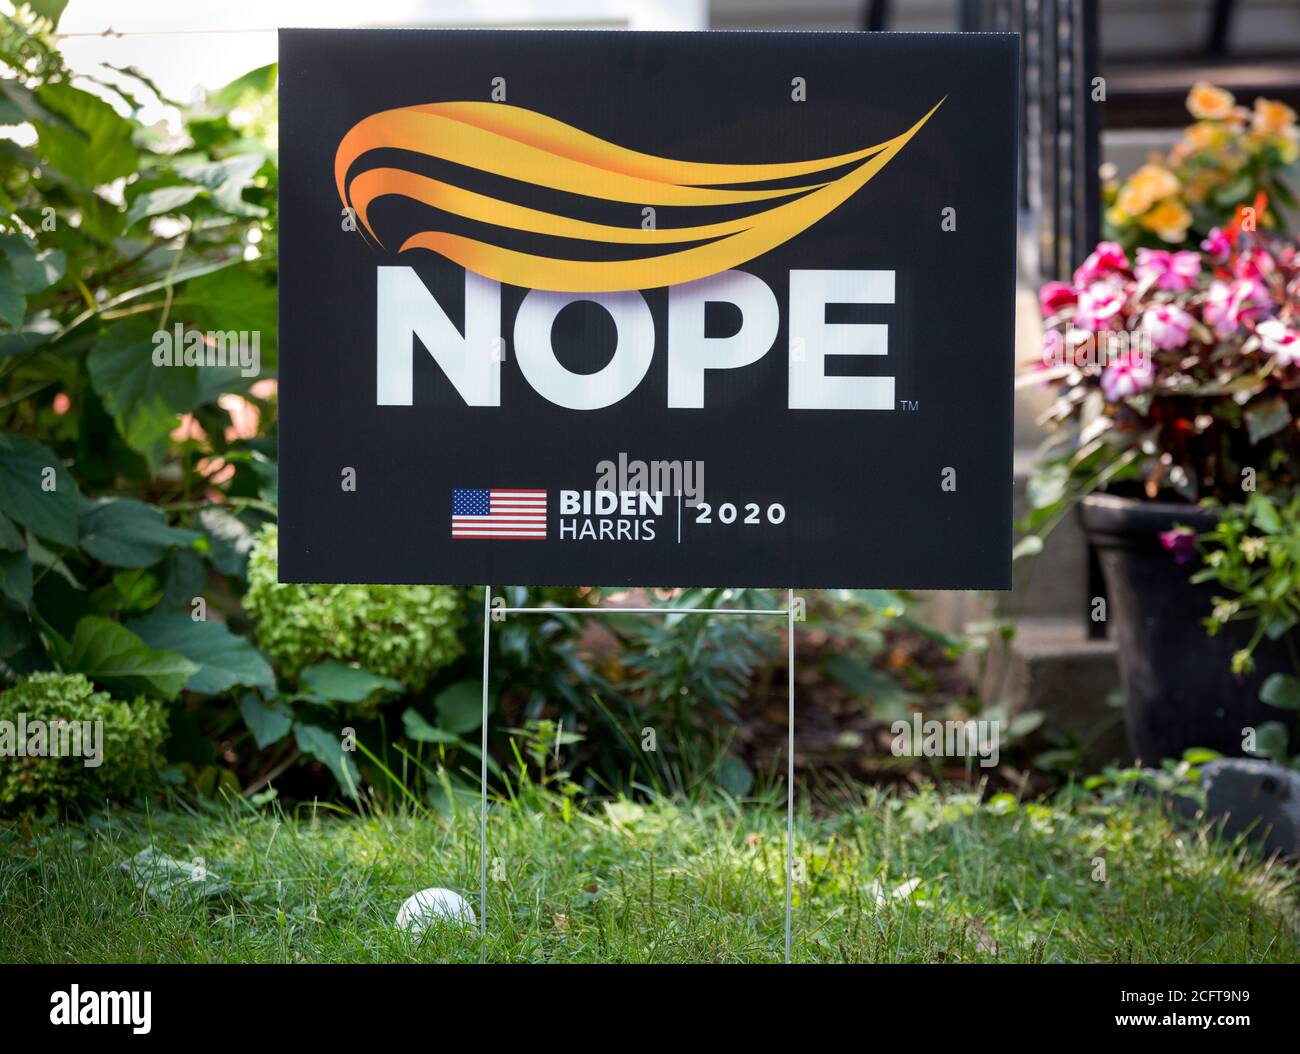 Ein 2020 Joe Biden und Kamala Harris Anti-Donald Trump Präsidentenhof Zeichen mit einem Design eines orangen Frisur und das Wort Nope. Stockfoto